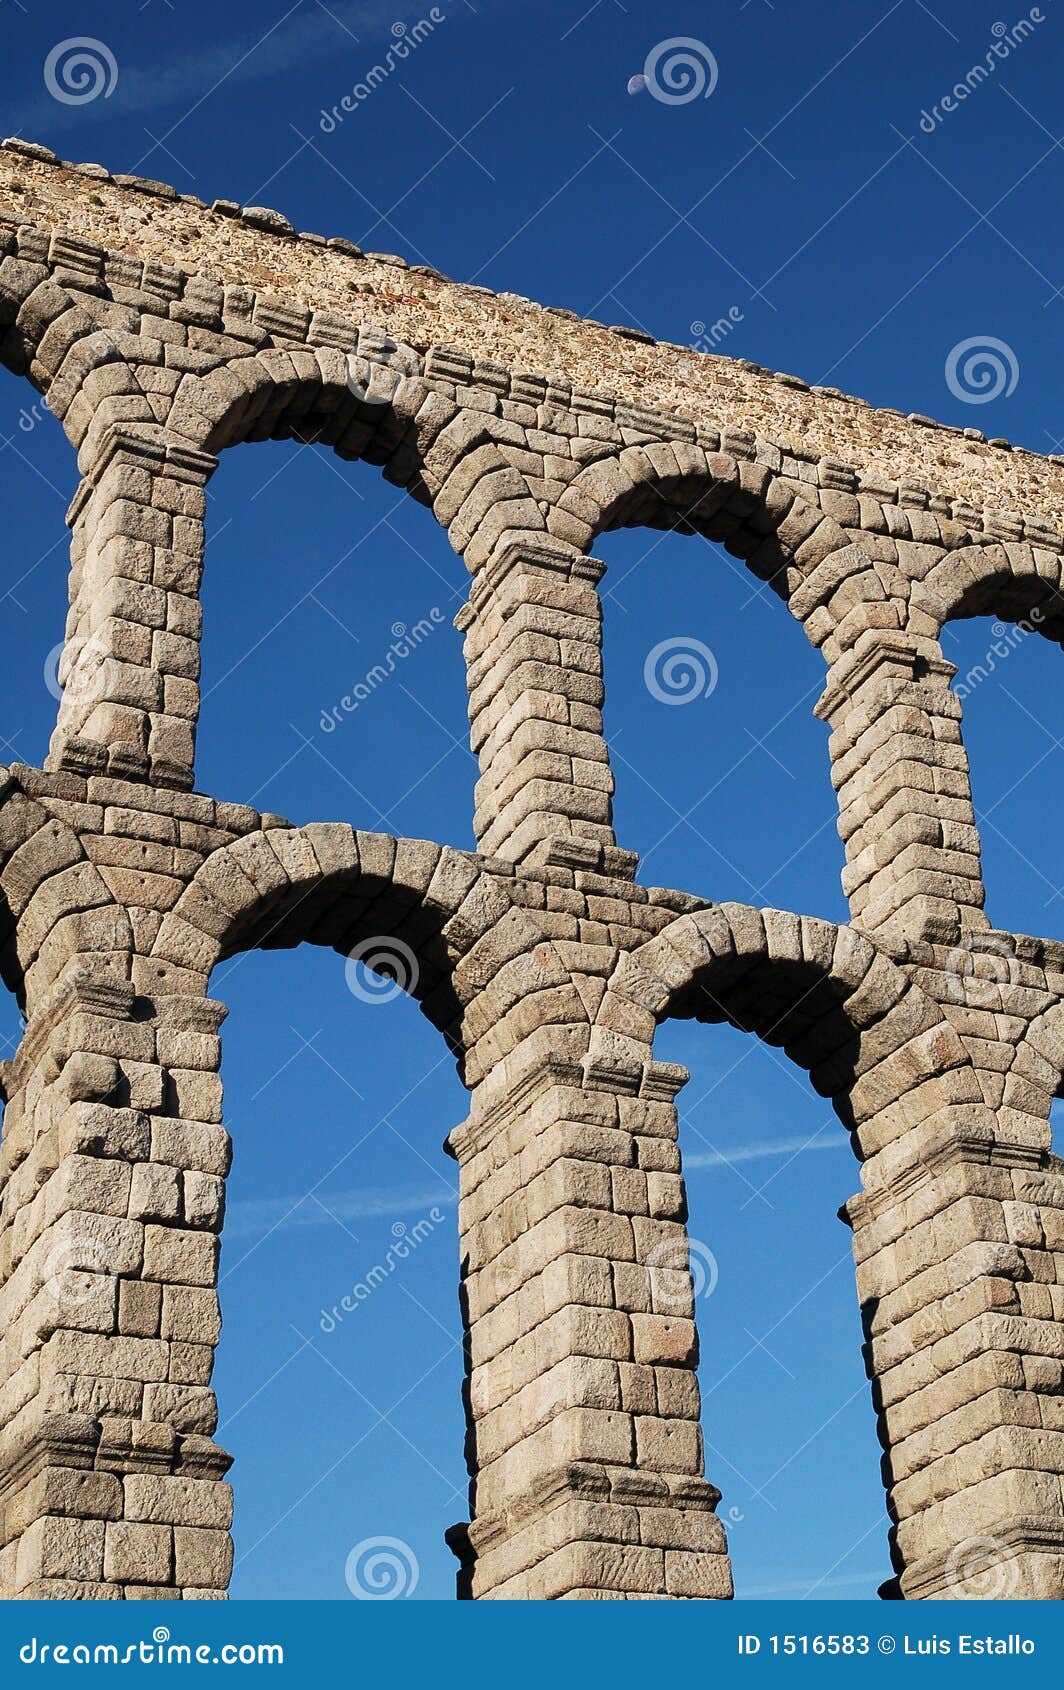 aqueduct 3